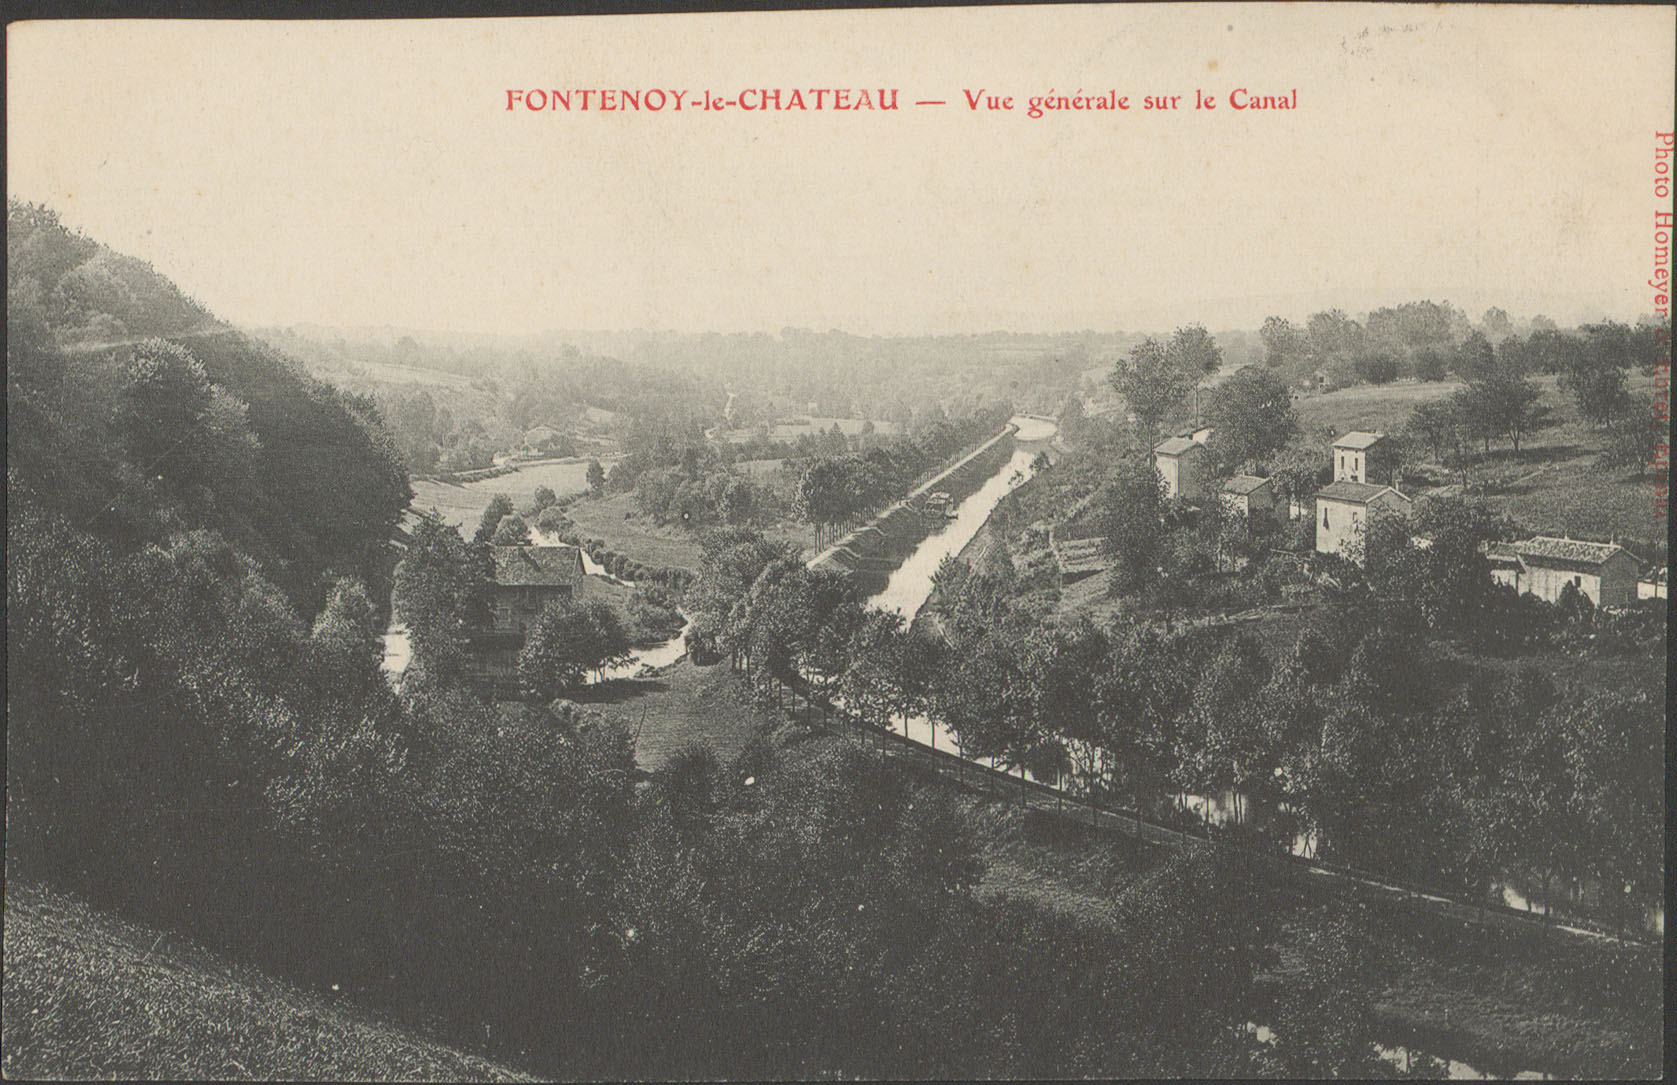 Contenu du Fontenoy-le-Château, Vue générale sur le canal